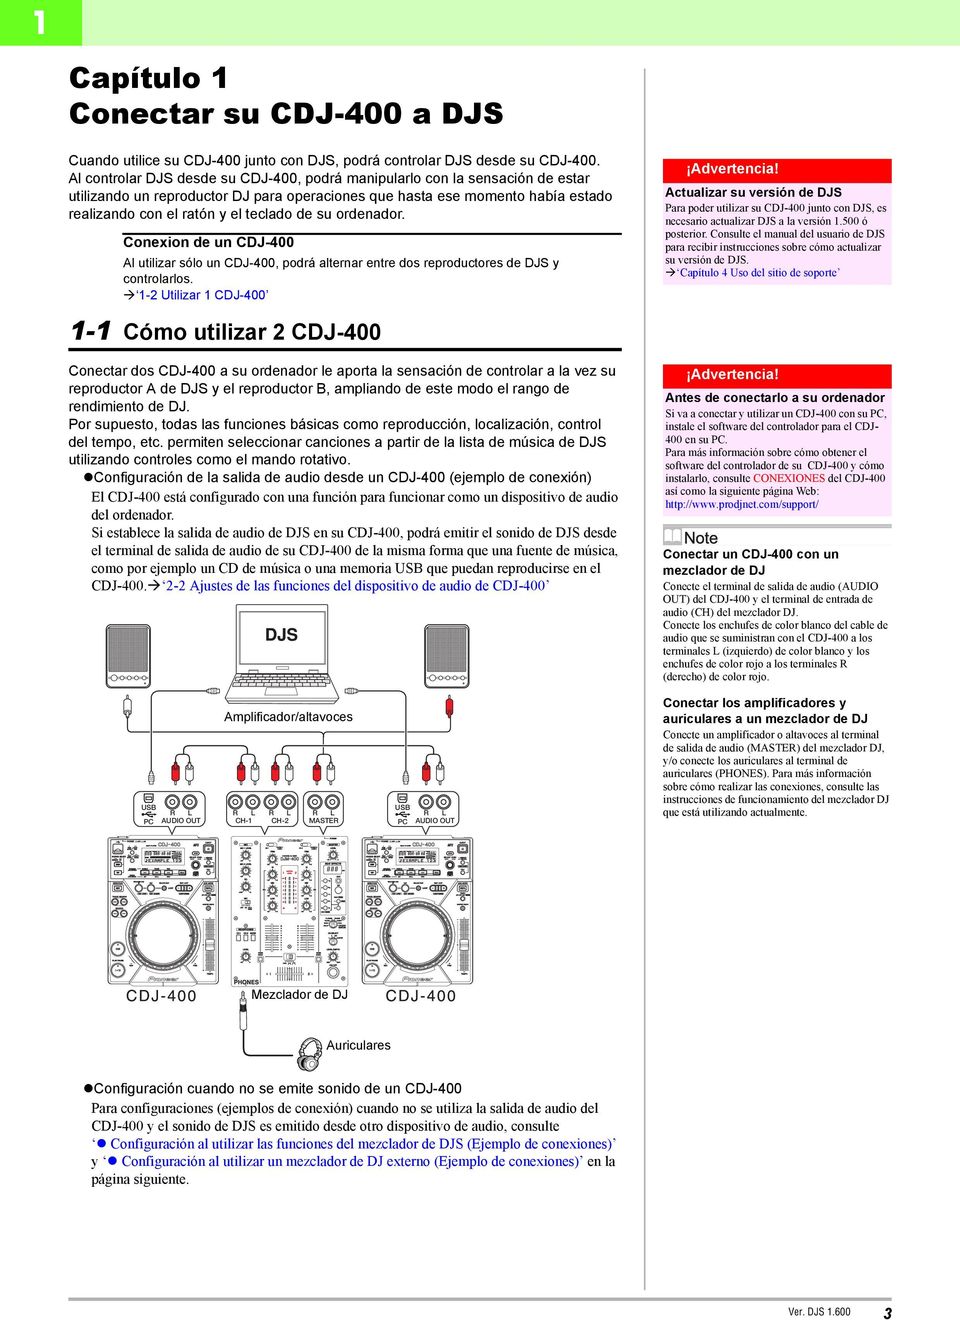 su ordenador. Conexion de un CDJ-400 Al utilizar sólo un CDJ-400, podrá alternar entre dos reproductores de DJS y controlarlos.